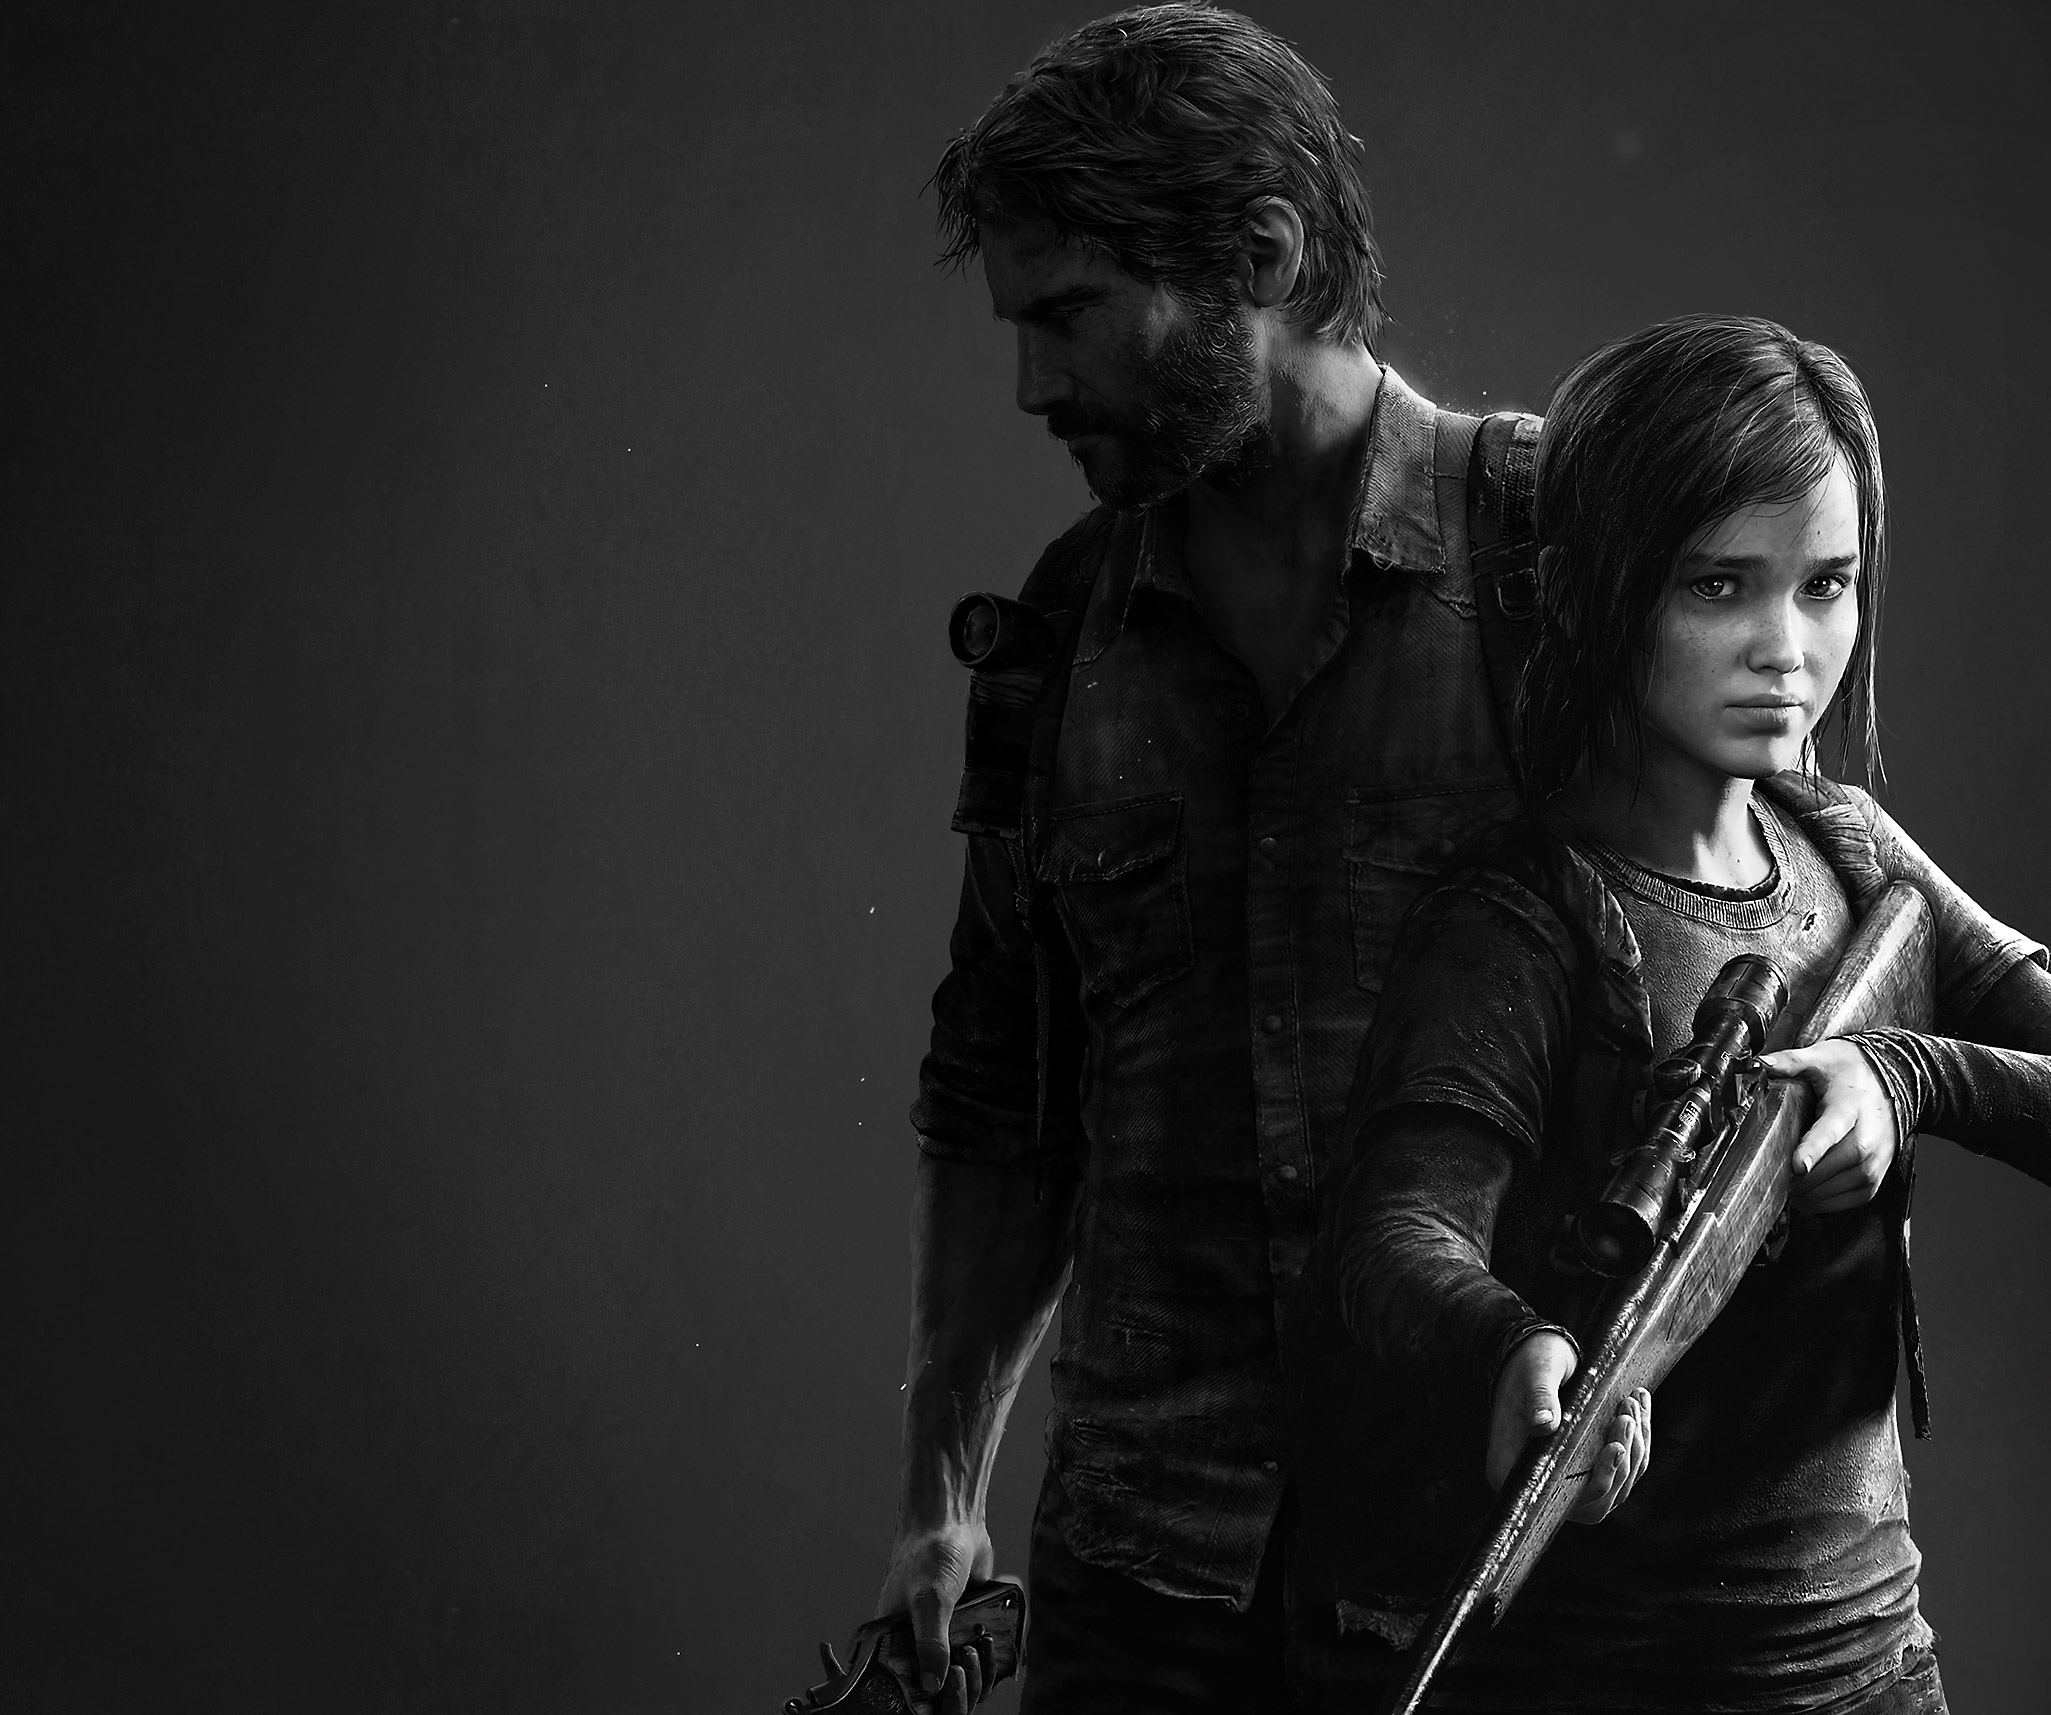 The Last of Us Remastered - Arte principal mostrando uma imagem em preto e branco dos protagonistas Joel e Ellie